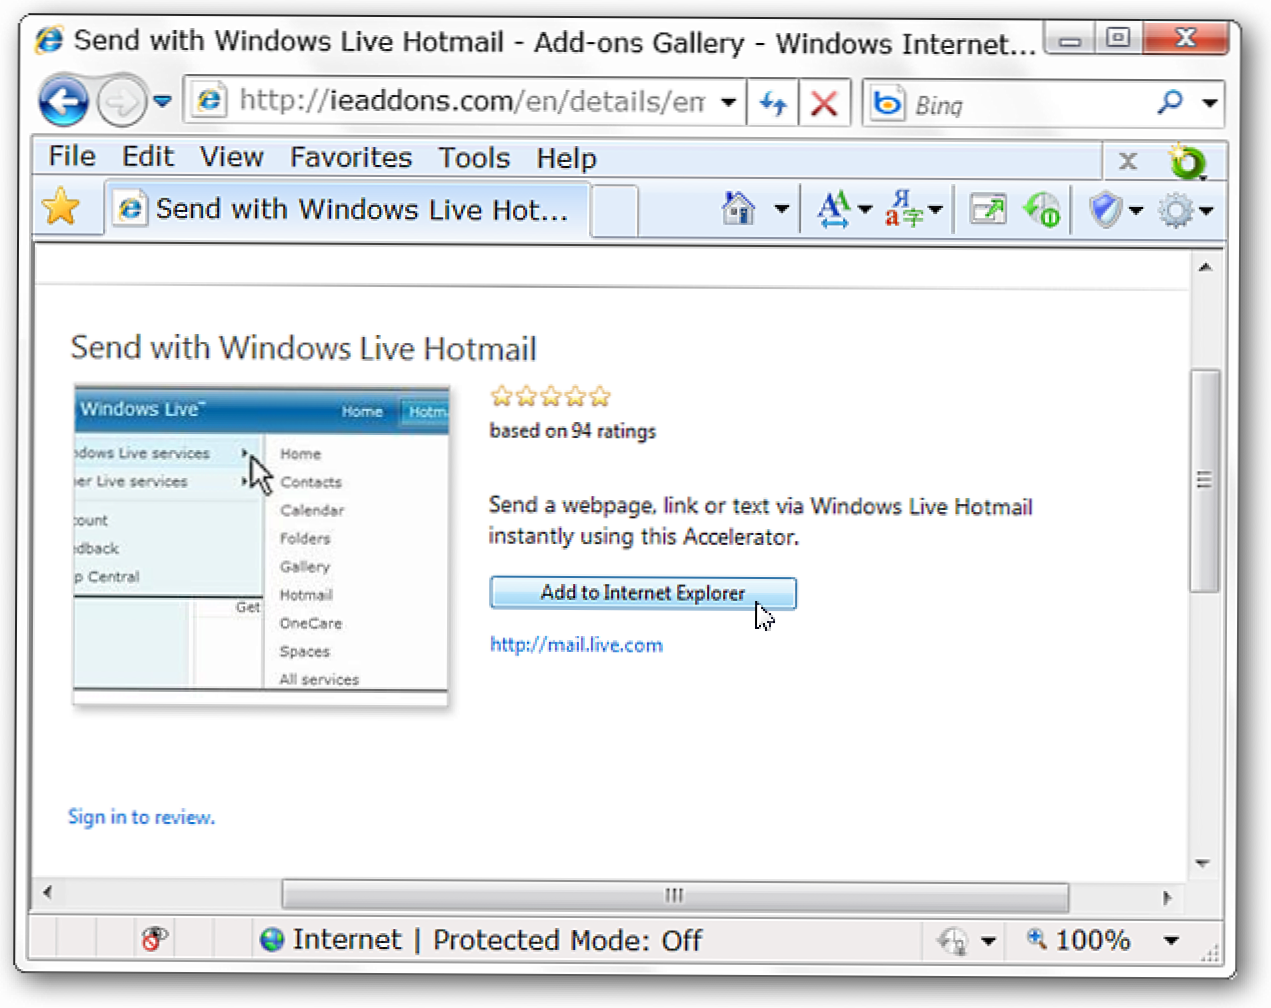 Изпращане на текст и връзки чрез Windows Live Hotmail в IE 8 (Как да)